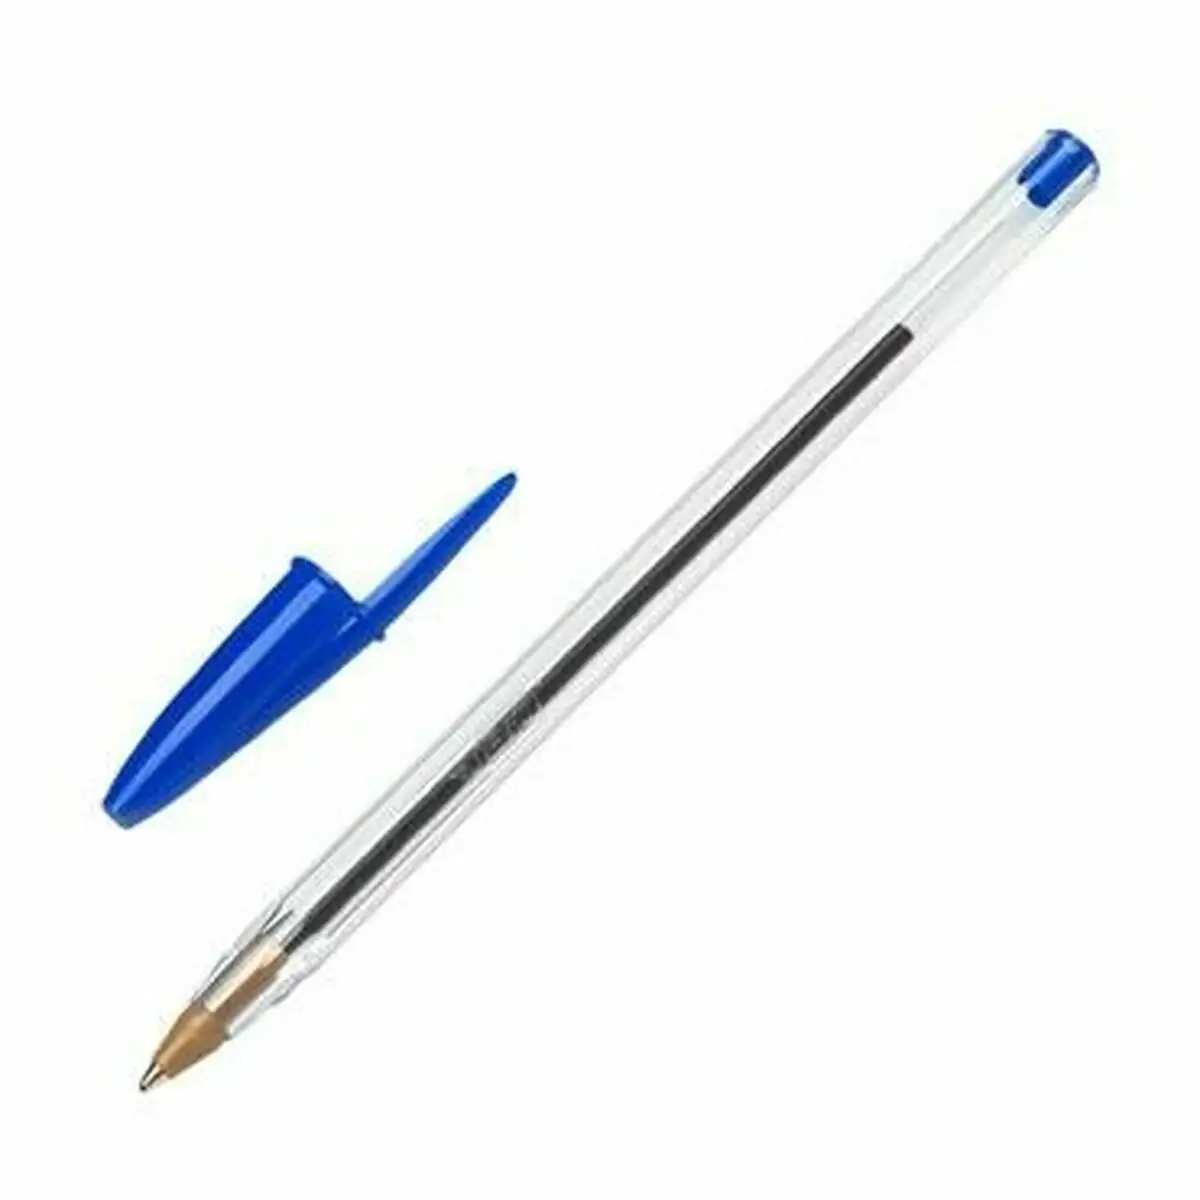 Crayon bic original bleu reconditionne d _7230. DIAYTAR SENEGAL - Votre Destination pour un Shopping Réfléchi. Découvrez notre gamme variée et choisissez des produits qui correspondent à vos valeurs et à votre style de vie.